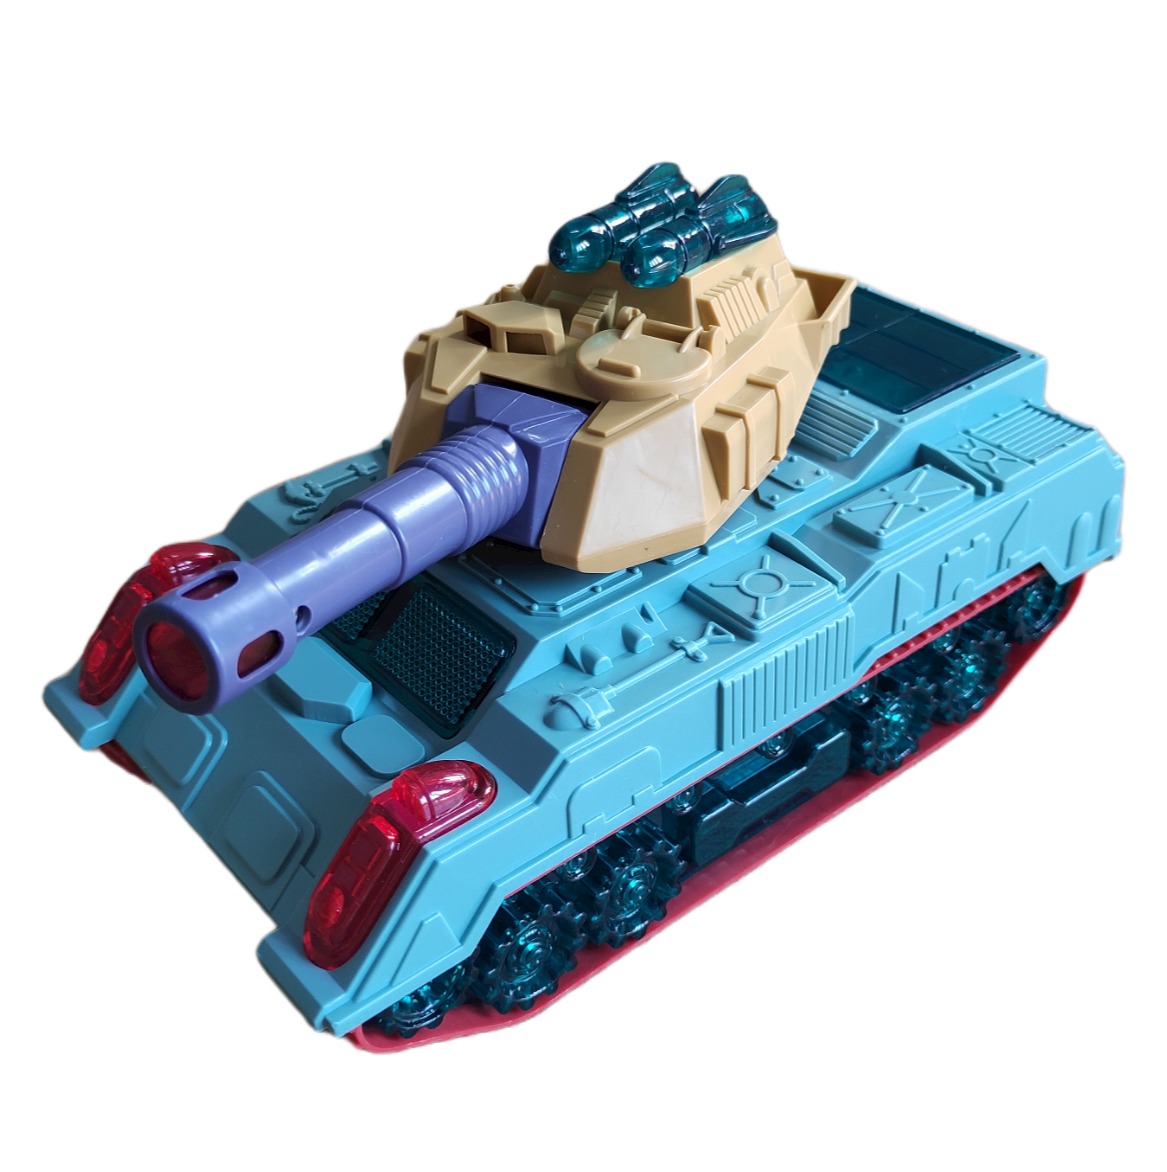 Đồ chơi mô hình xe tăng là một sự lựa chọn tuyệt vời cho các tín đồ của các loại phương tiện quân sự. Với độ chính xác và chi tiết tuyệt đỉnh, các mô hình xe tăng sẽ làm bạn cảm thấy như đang nắm giữ một chiếc xe tăng thật đẹp.